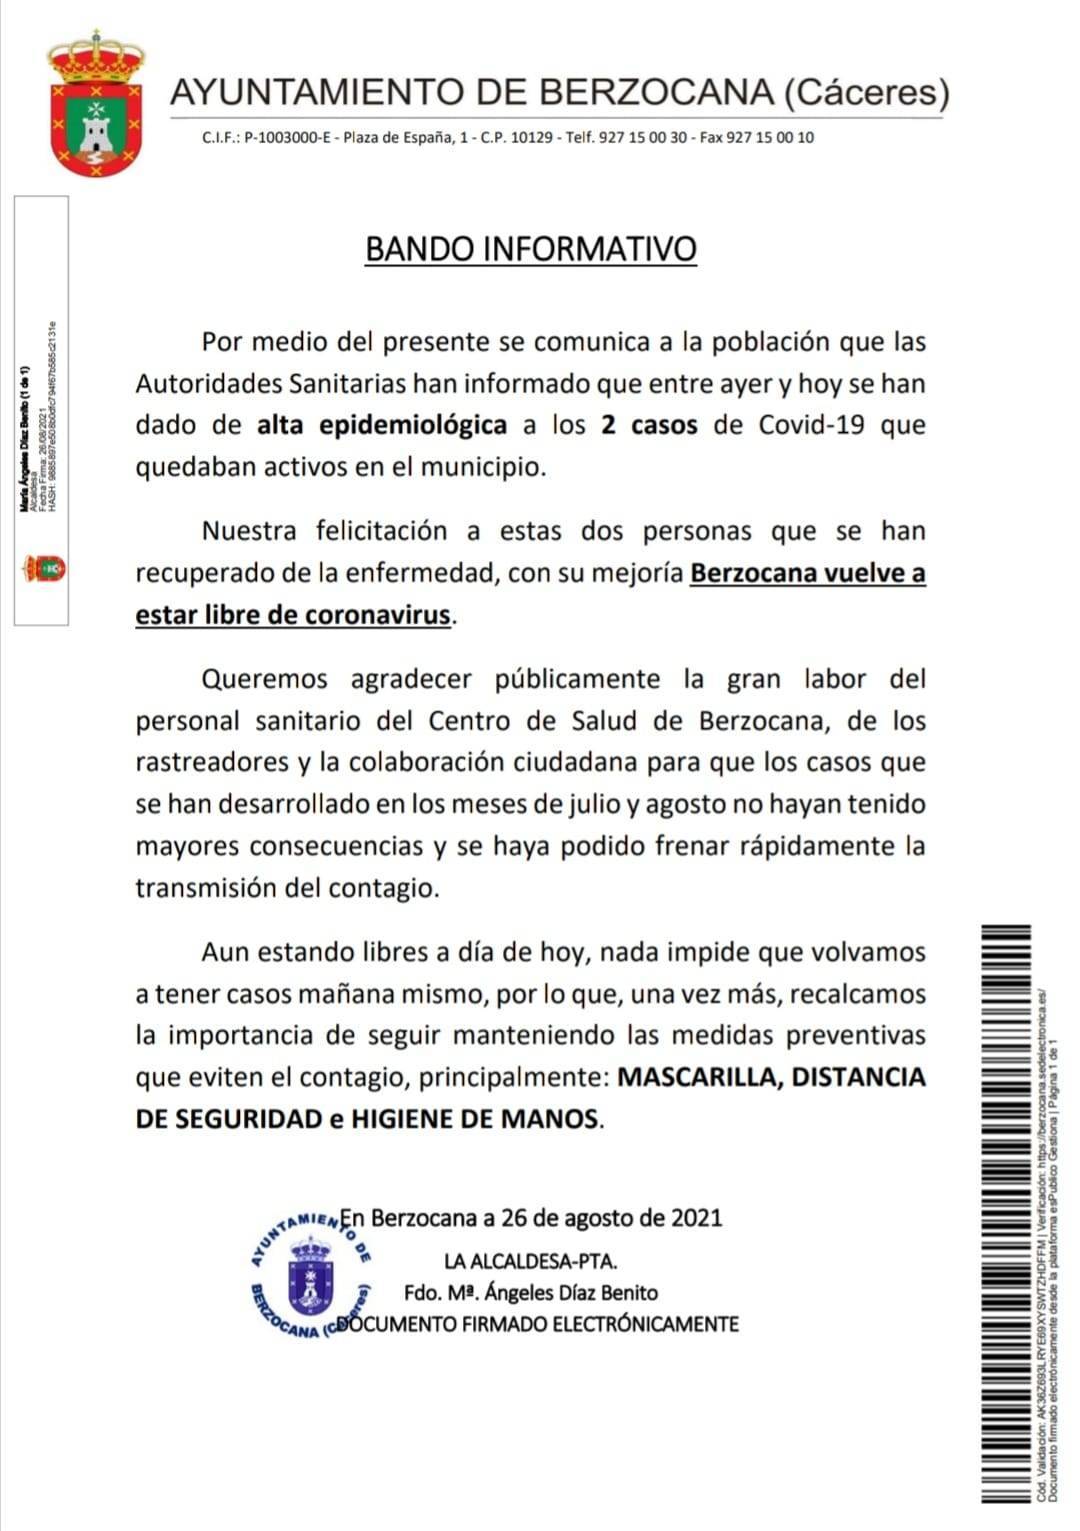 Ningún caso positivo activo de COVID-19 - Berzocana (Cáceres)